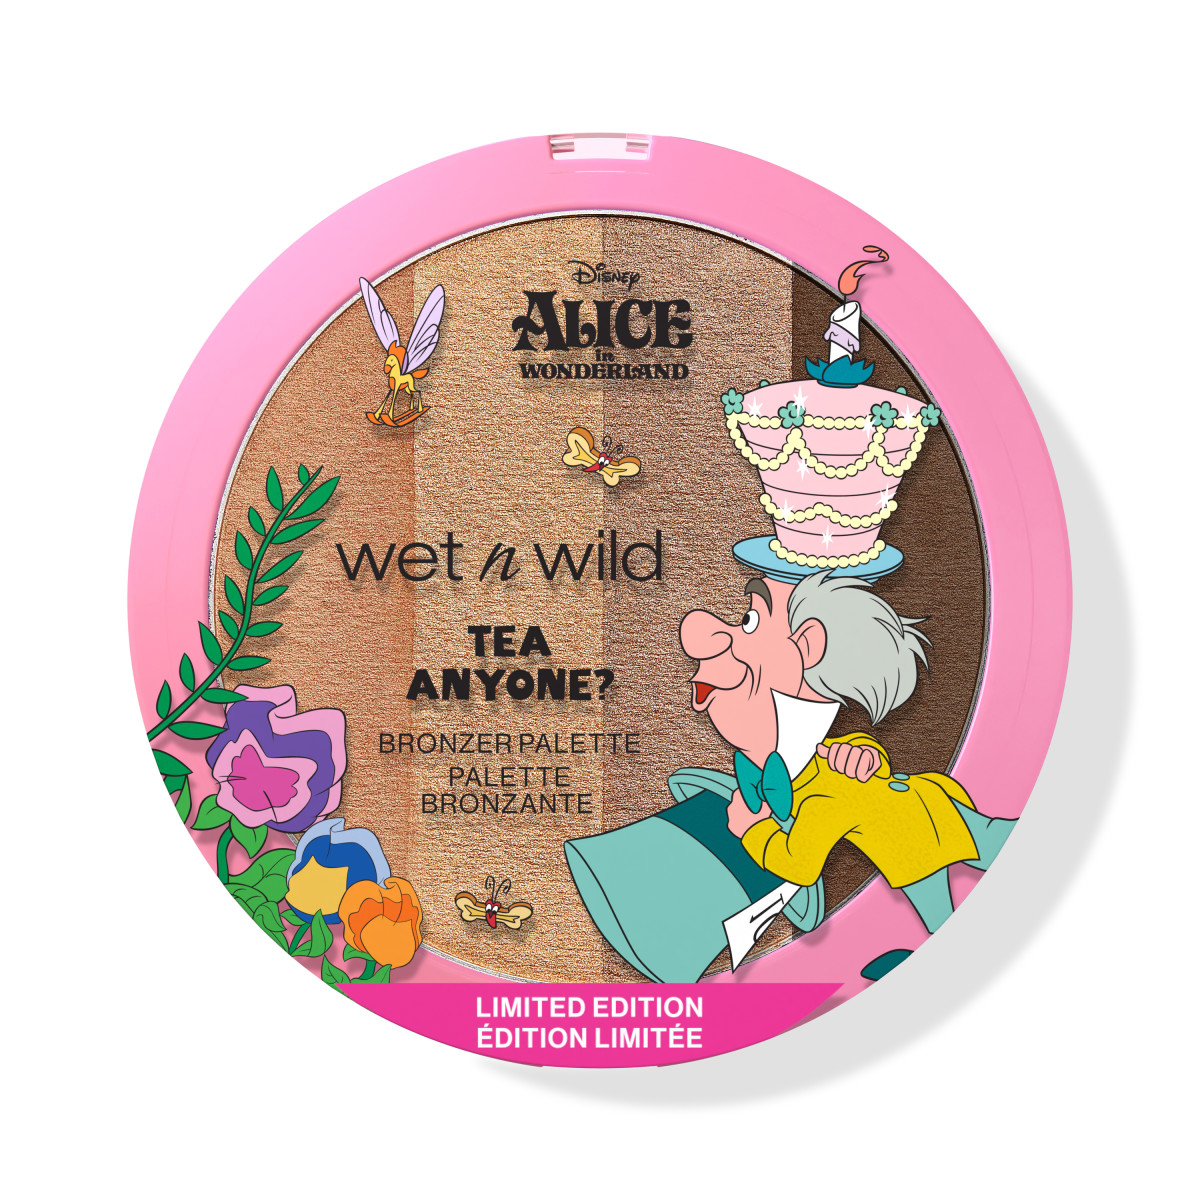 Wet N Wild Alice in Wonderland Tea Anyone? Bronzer Palette